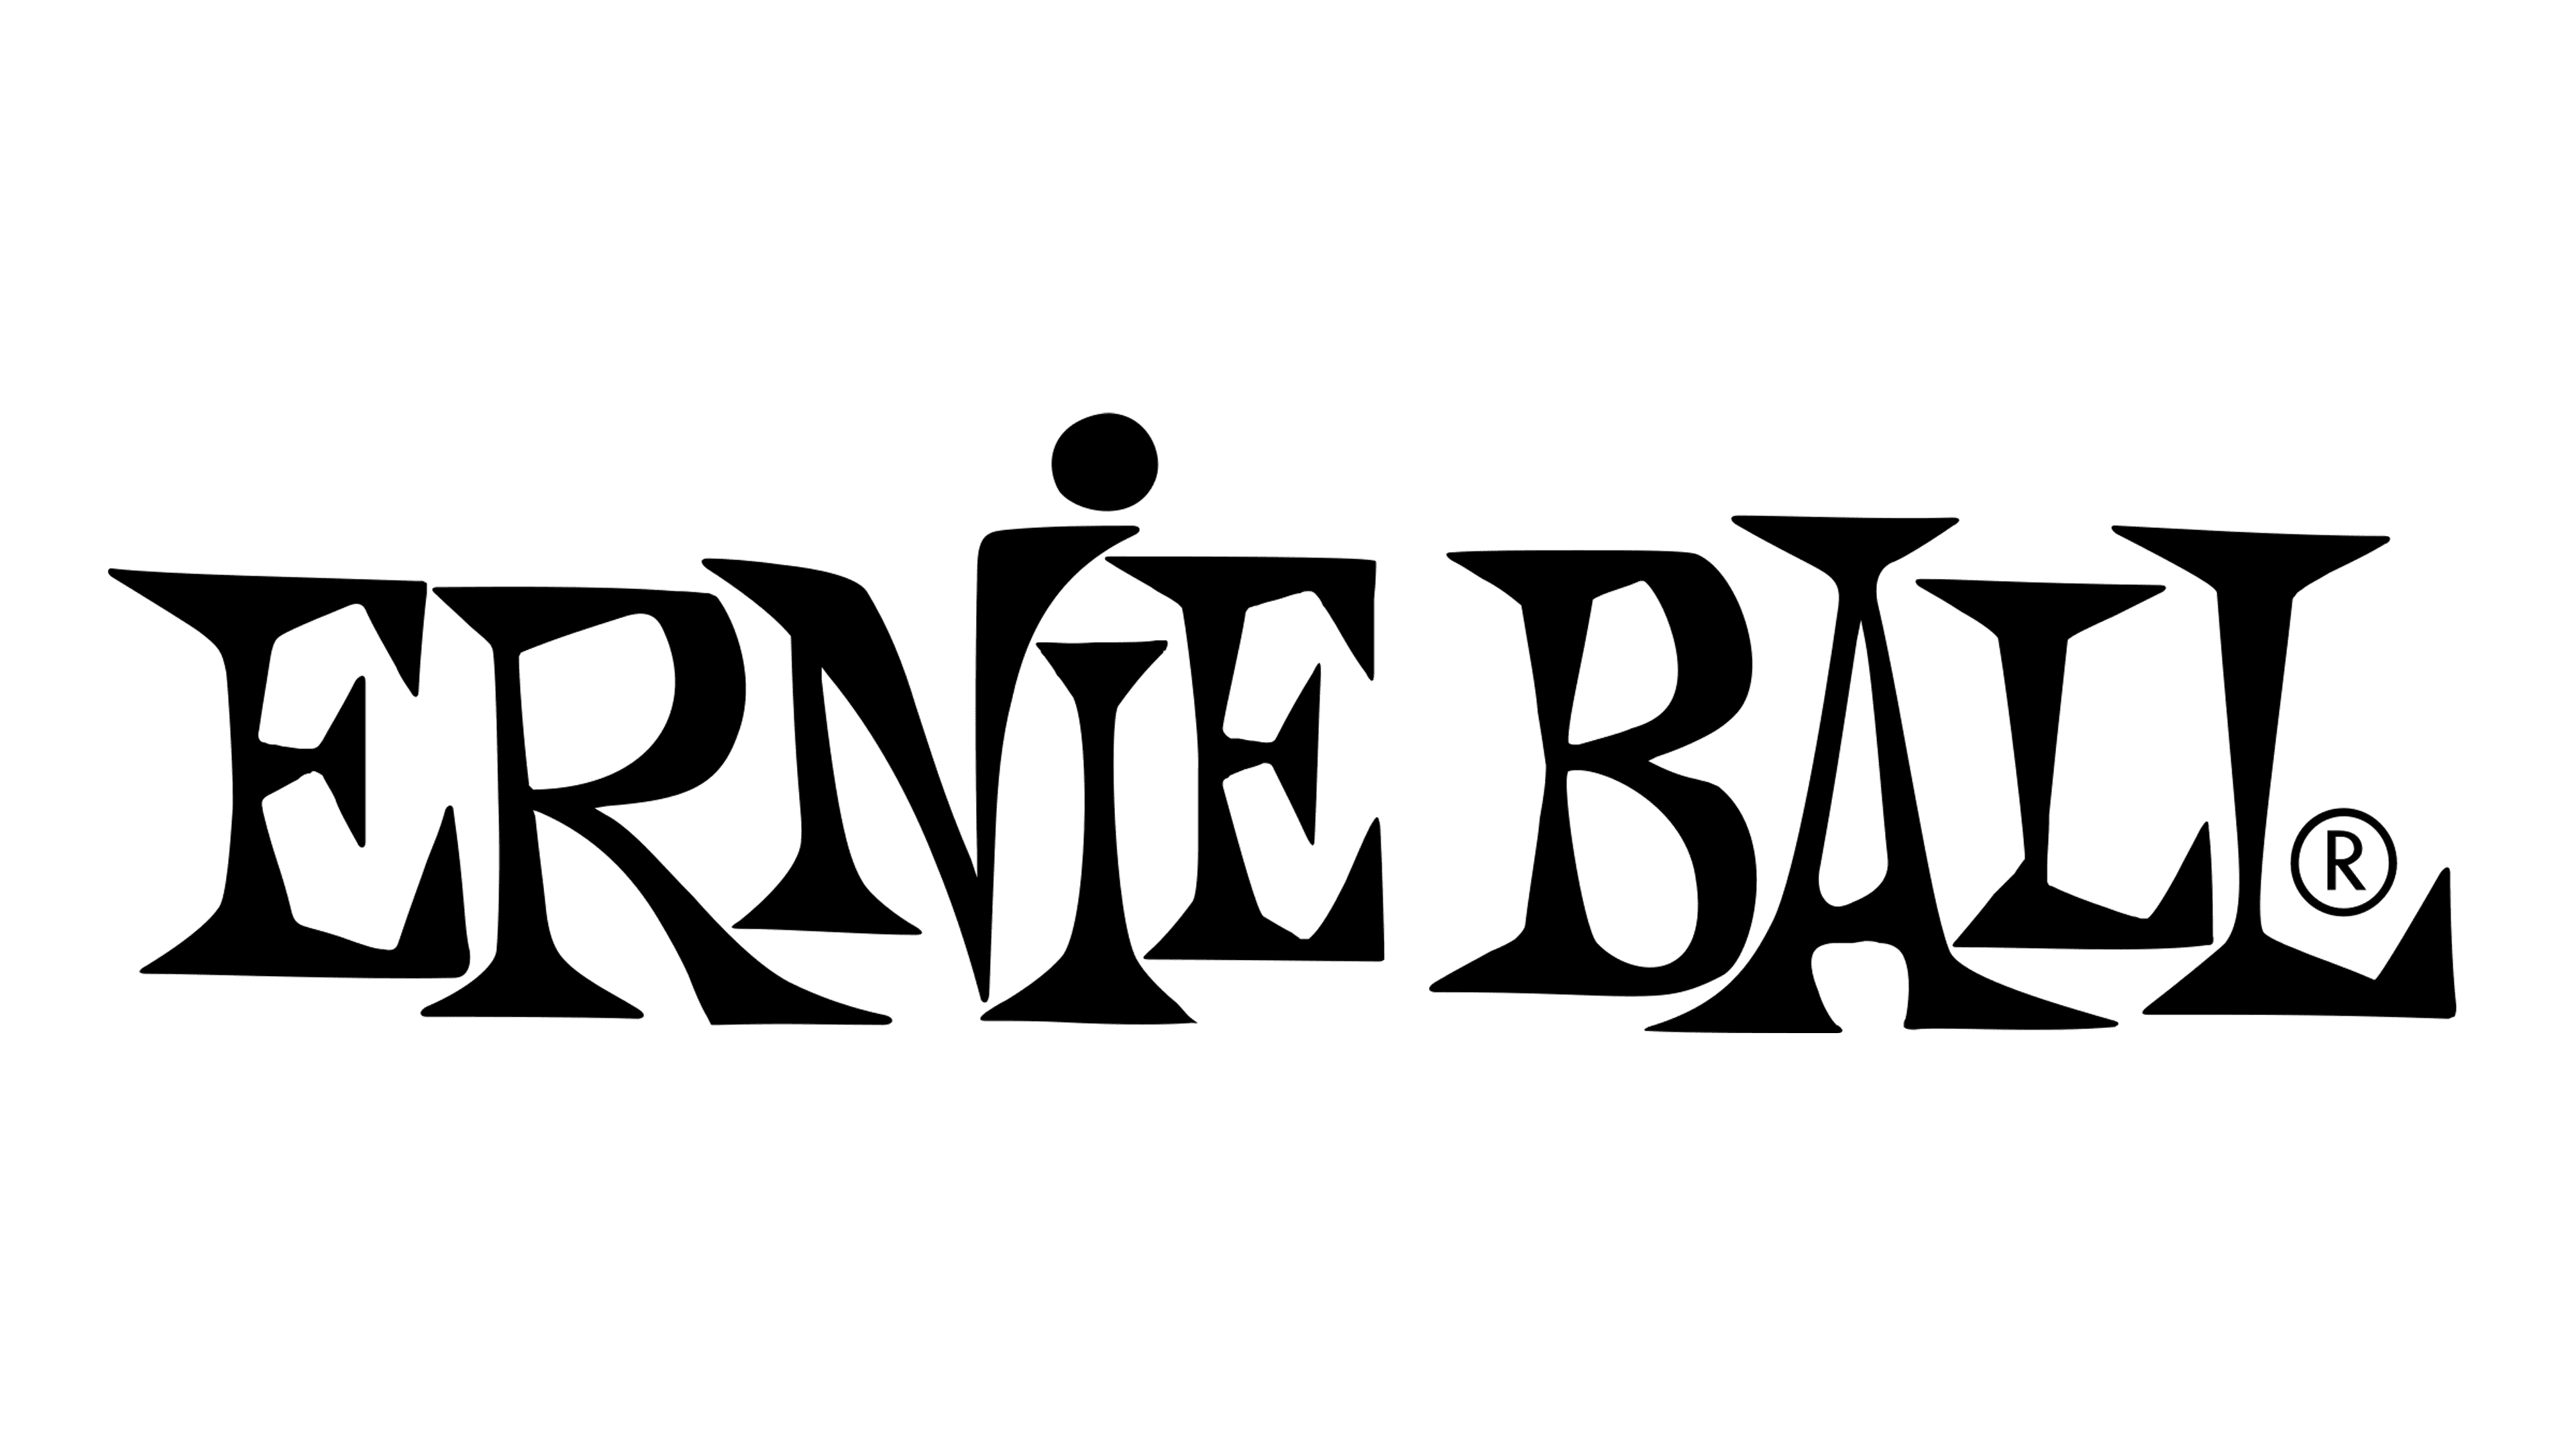 Ernie-Ball-logo